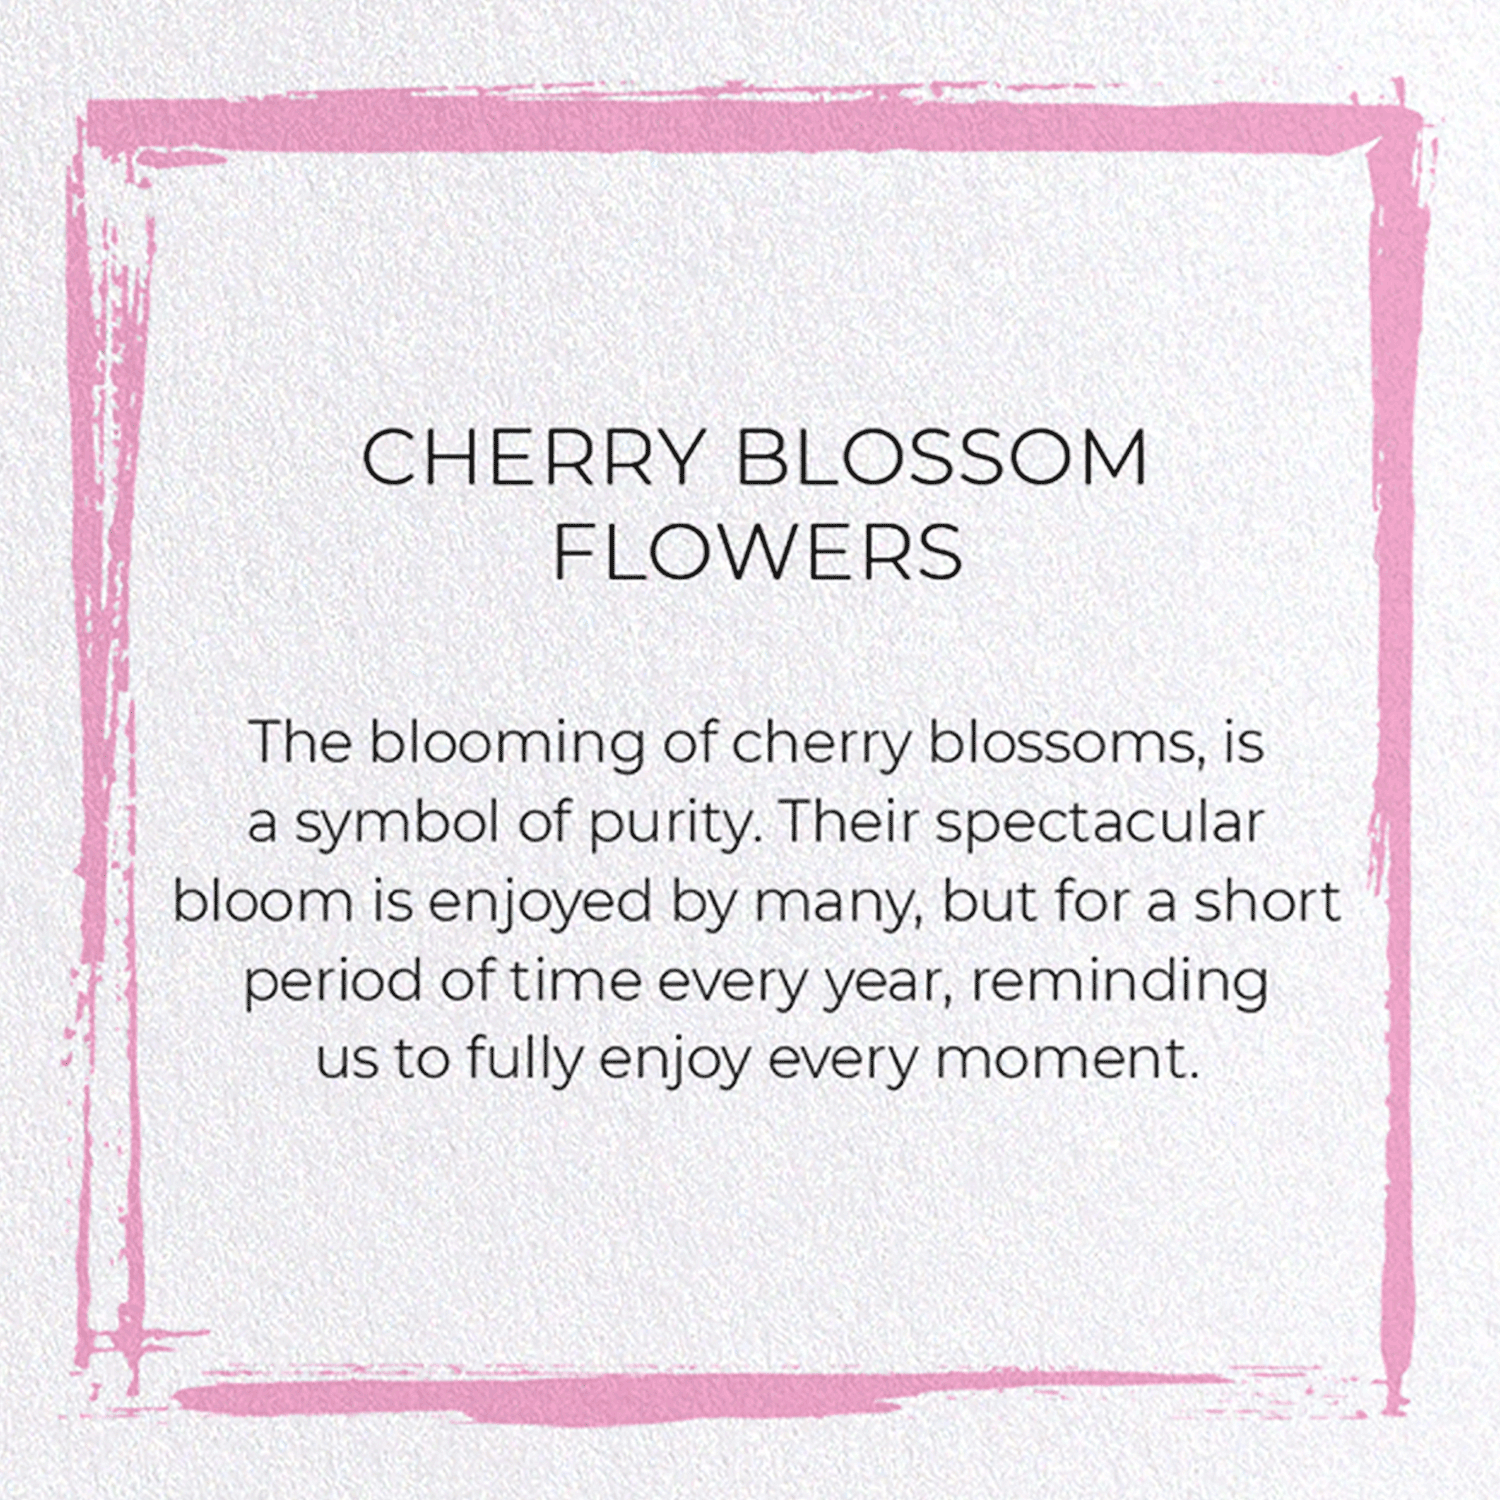 CHERRY BLOSSOM FLOWERS